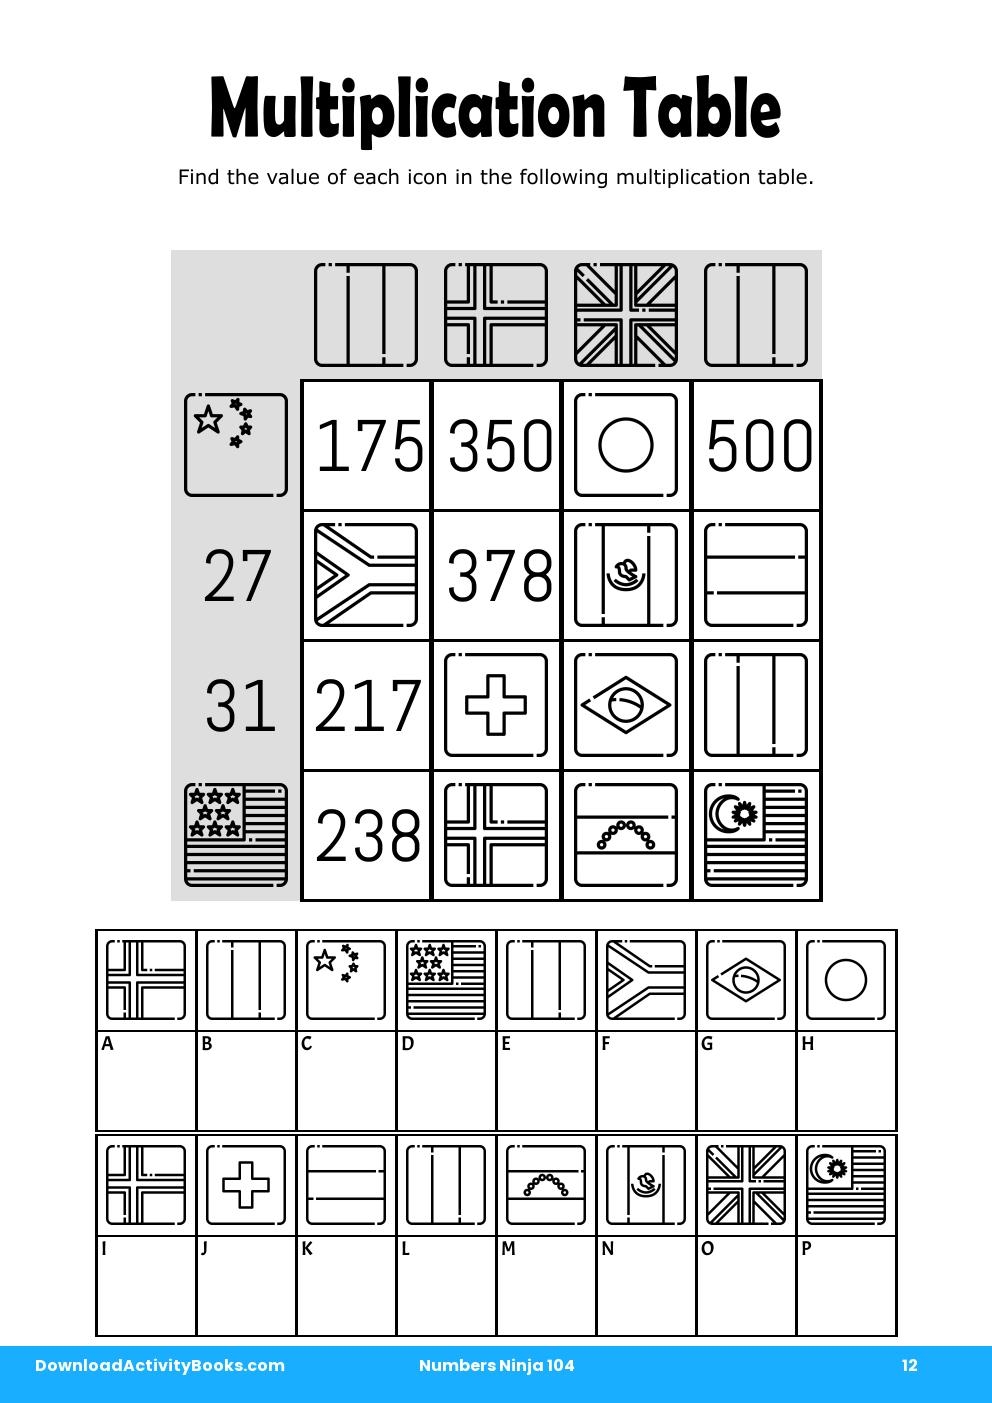 Multiplication Table in Numbers Ninja 104